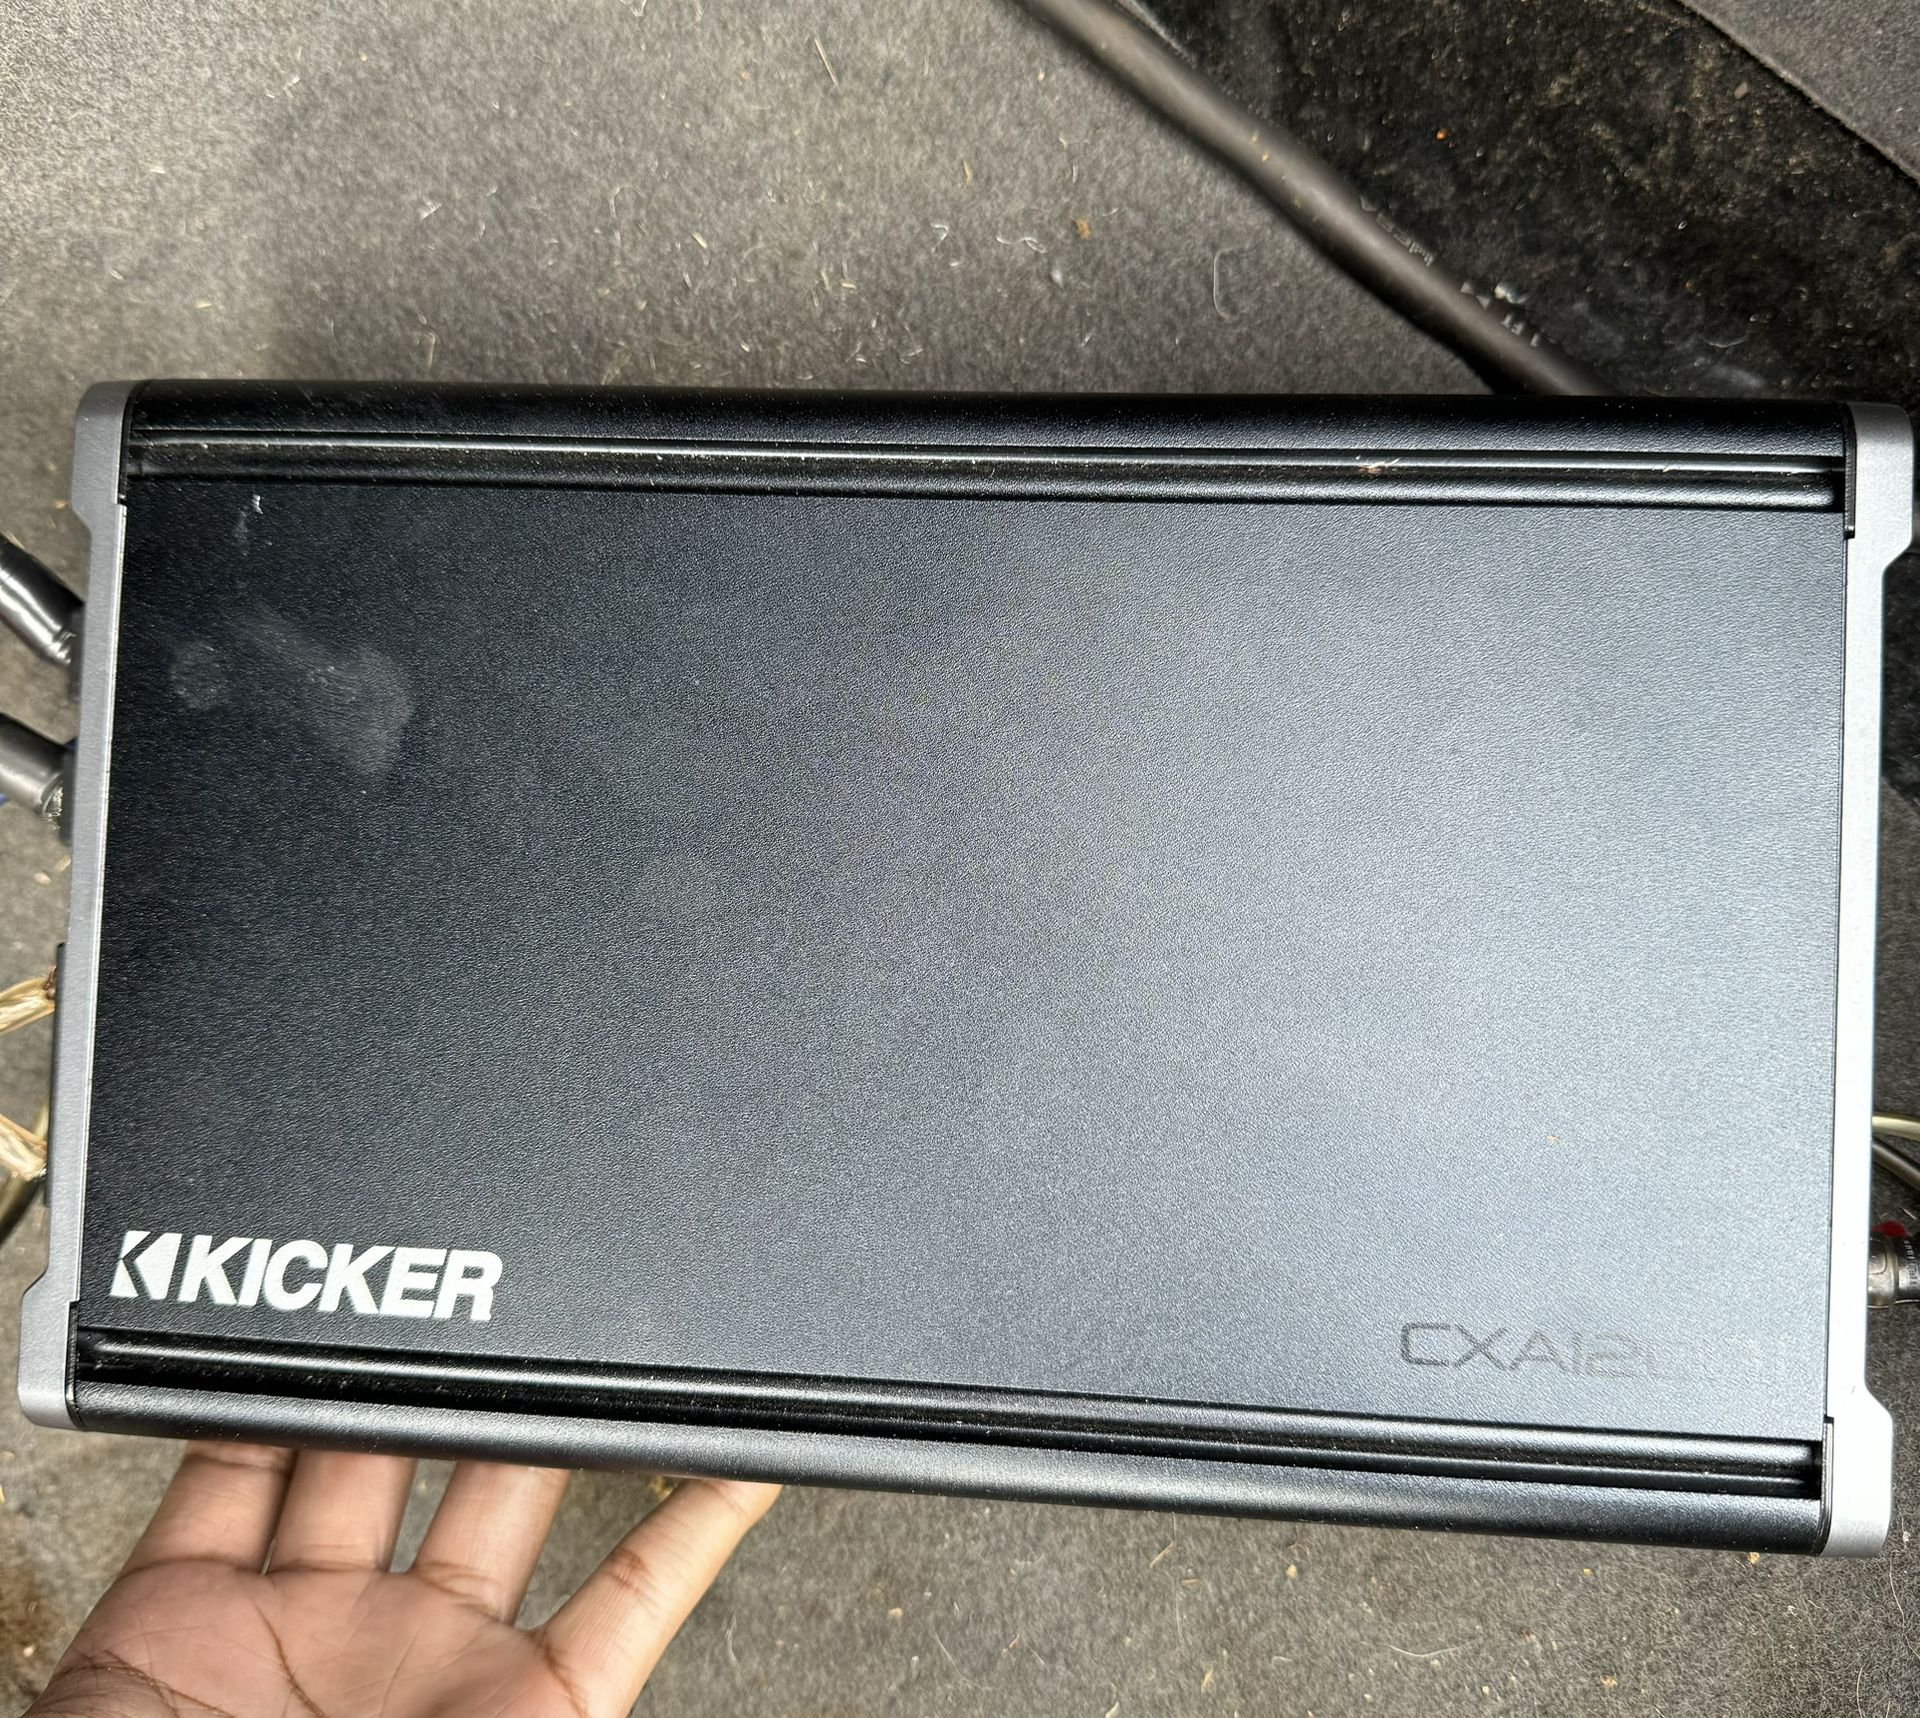 Kicker CXA1200.1 Amp